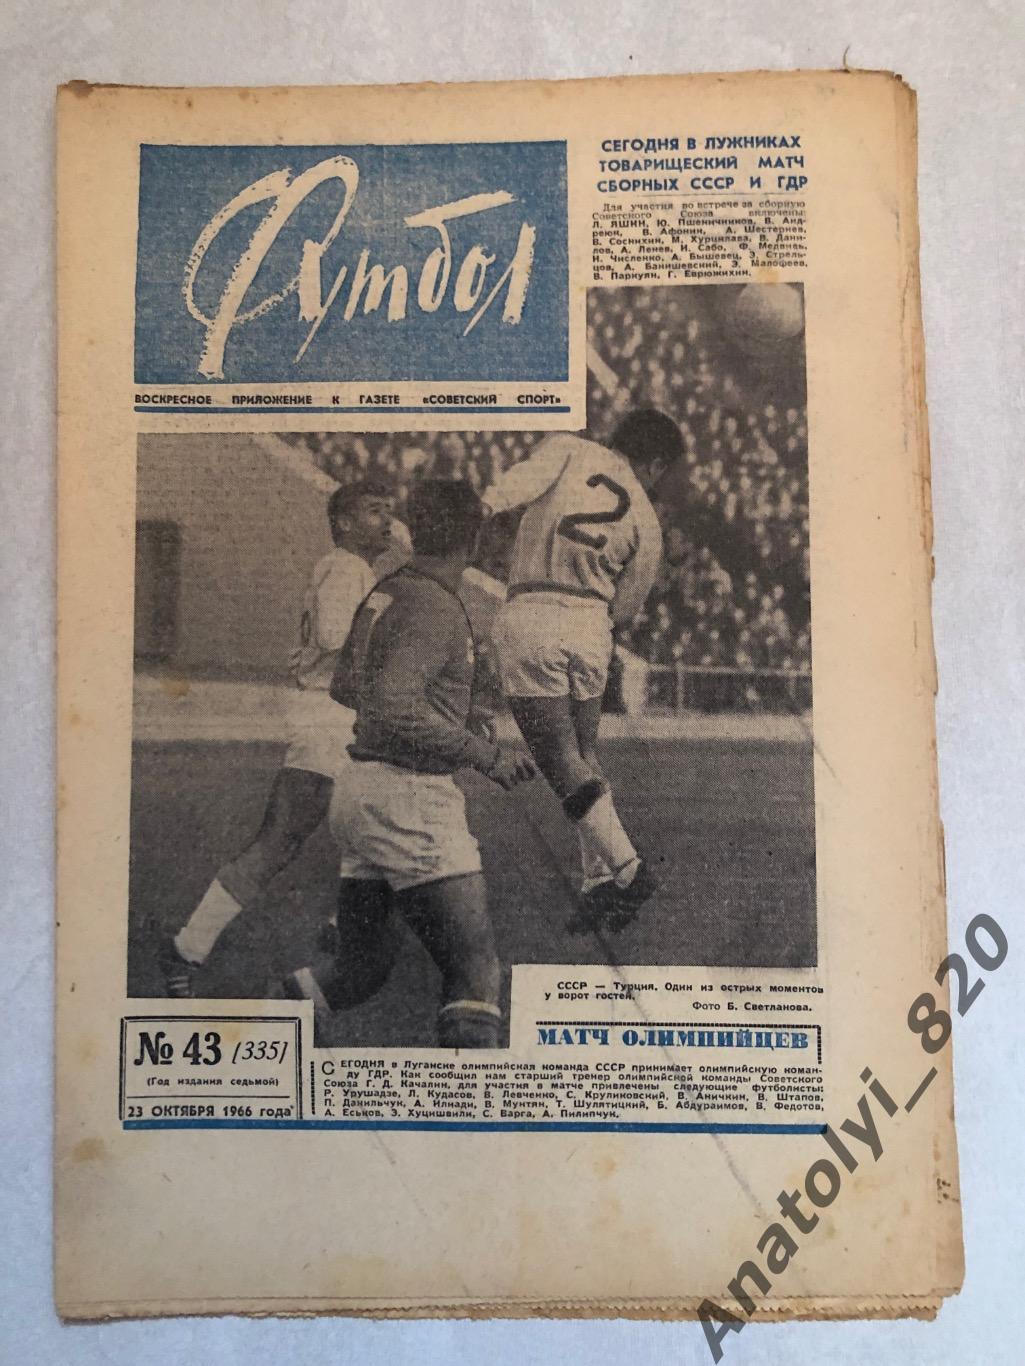 Еженедельник футбол номер 43 от 23.10.1966